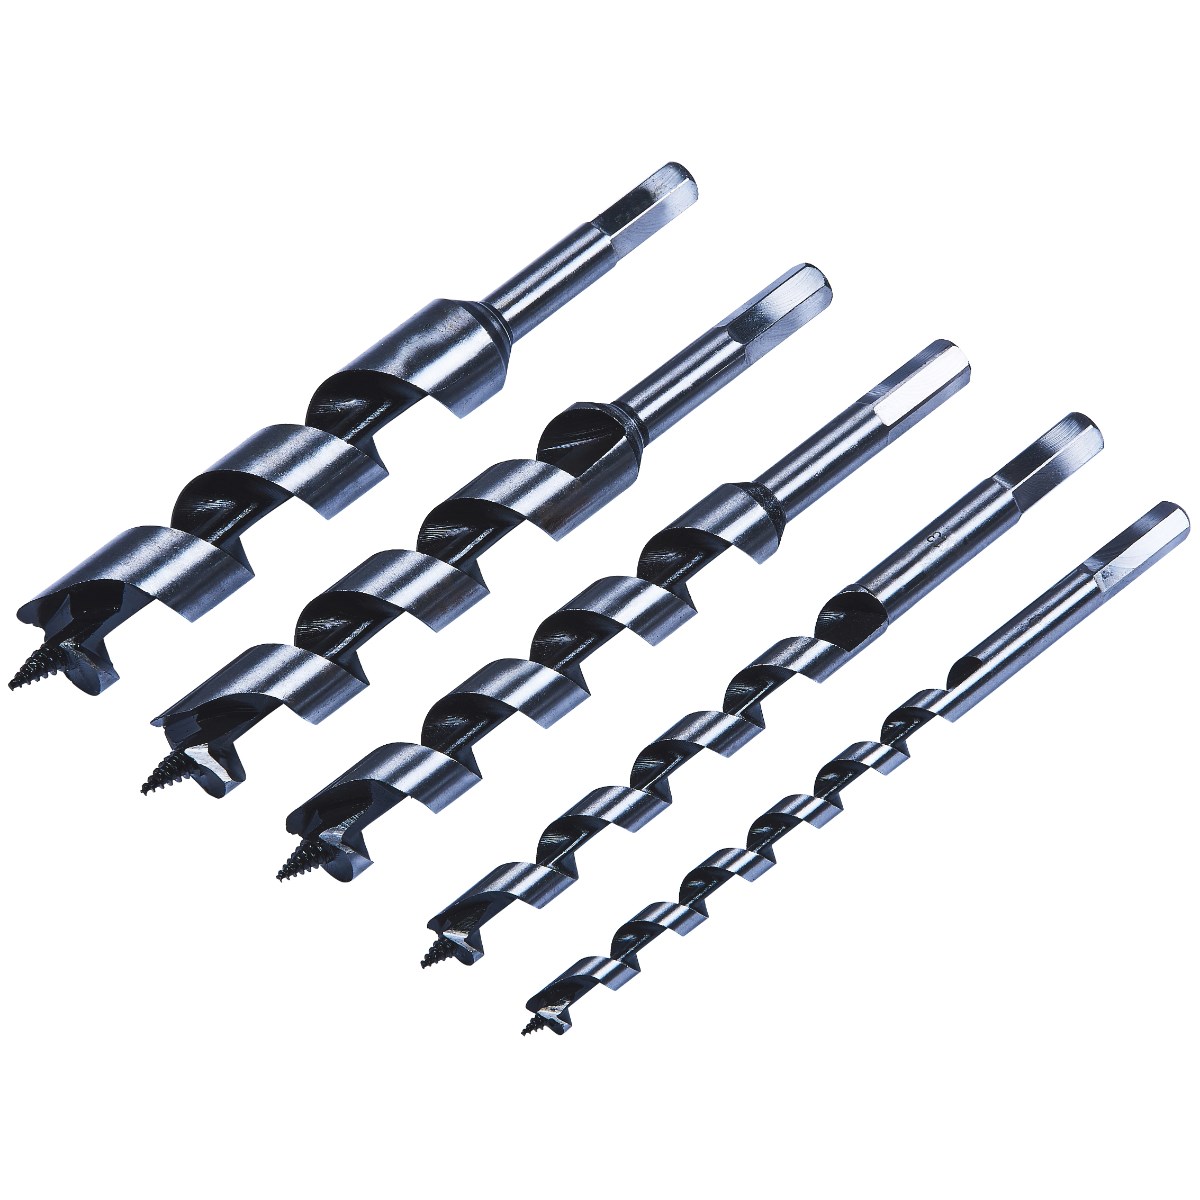 5pc auger bit set (10, 13, 19, 22, 25mm) - Amtech